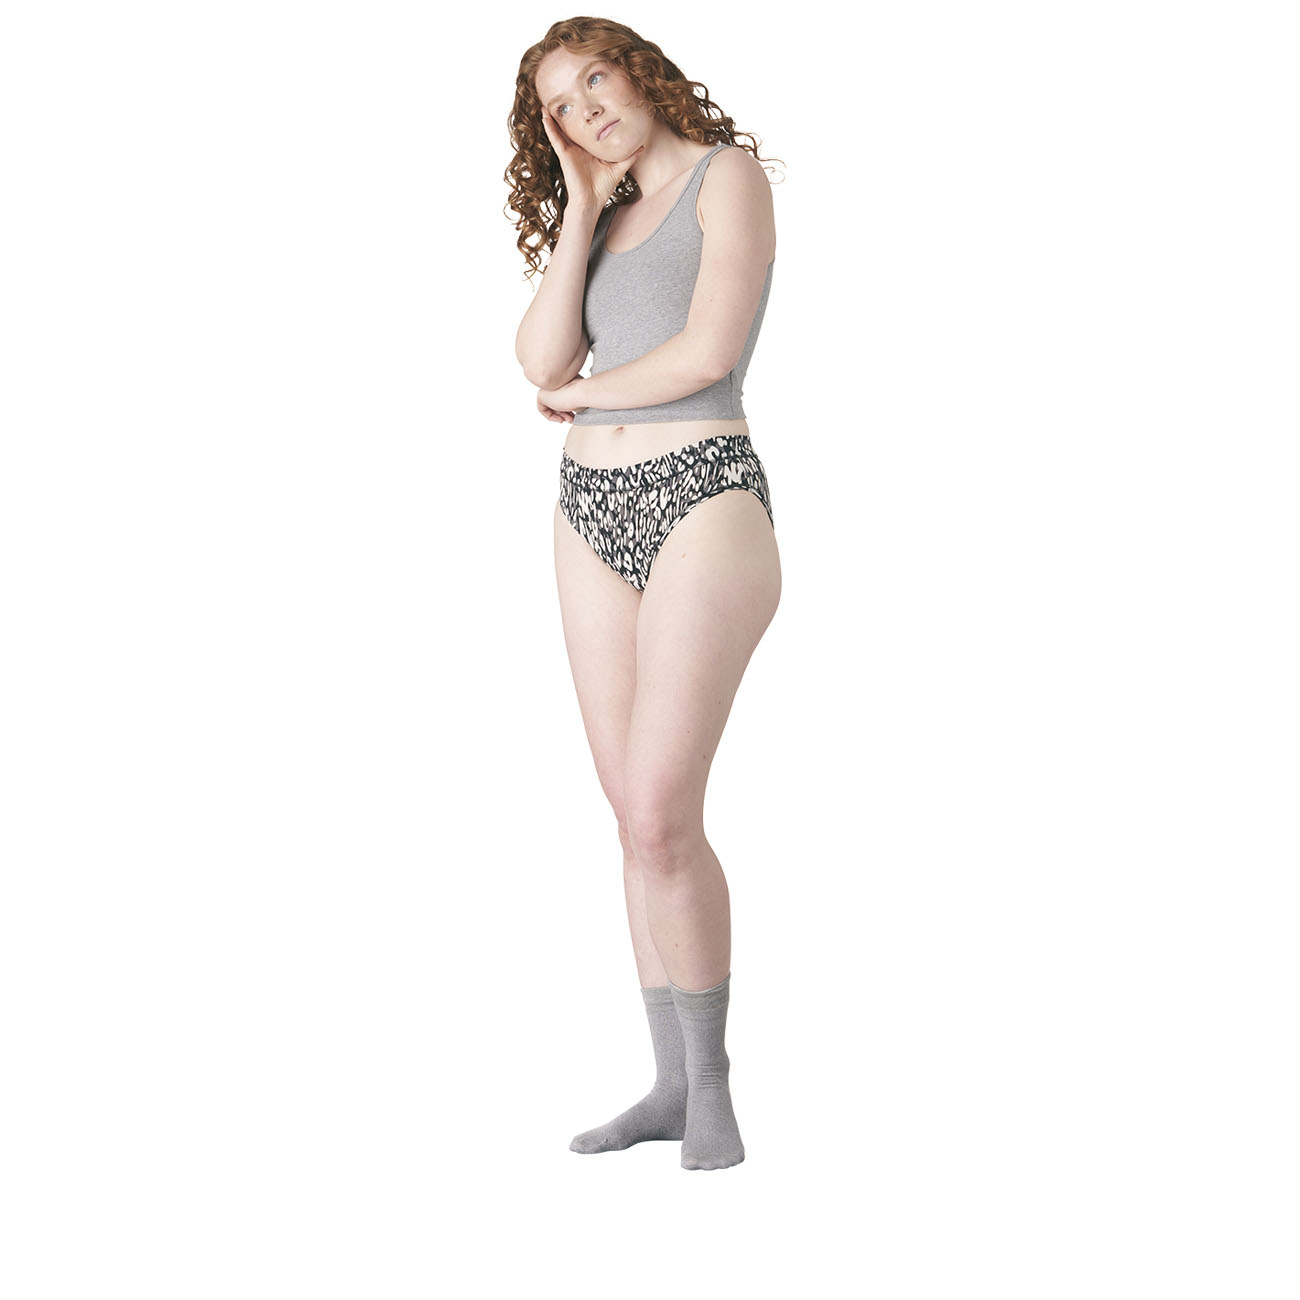 Thinx Women's Cotton All Day High-waist Underwear - Rhubarb 4x : Target